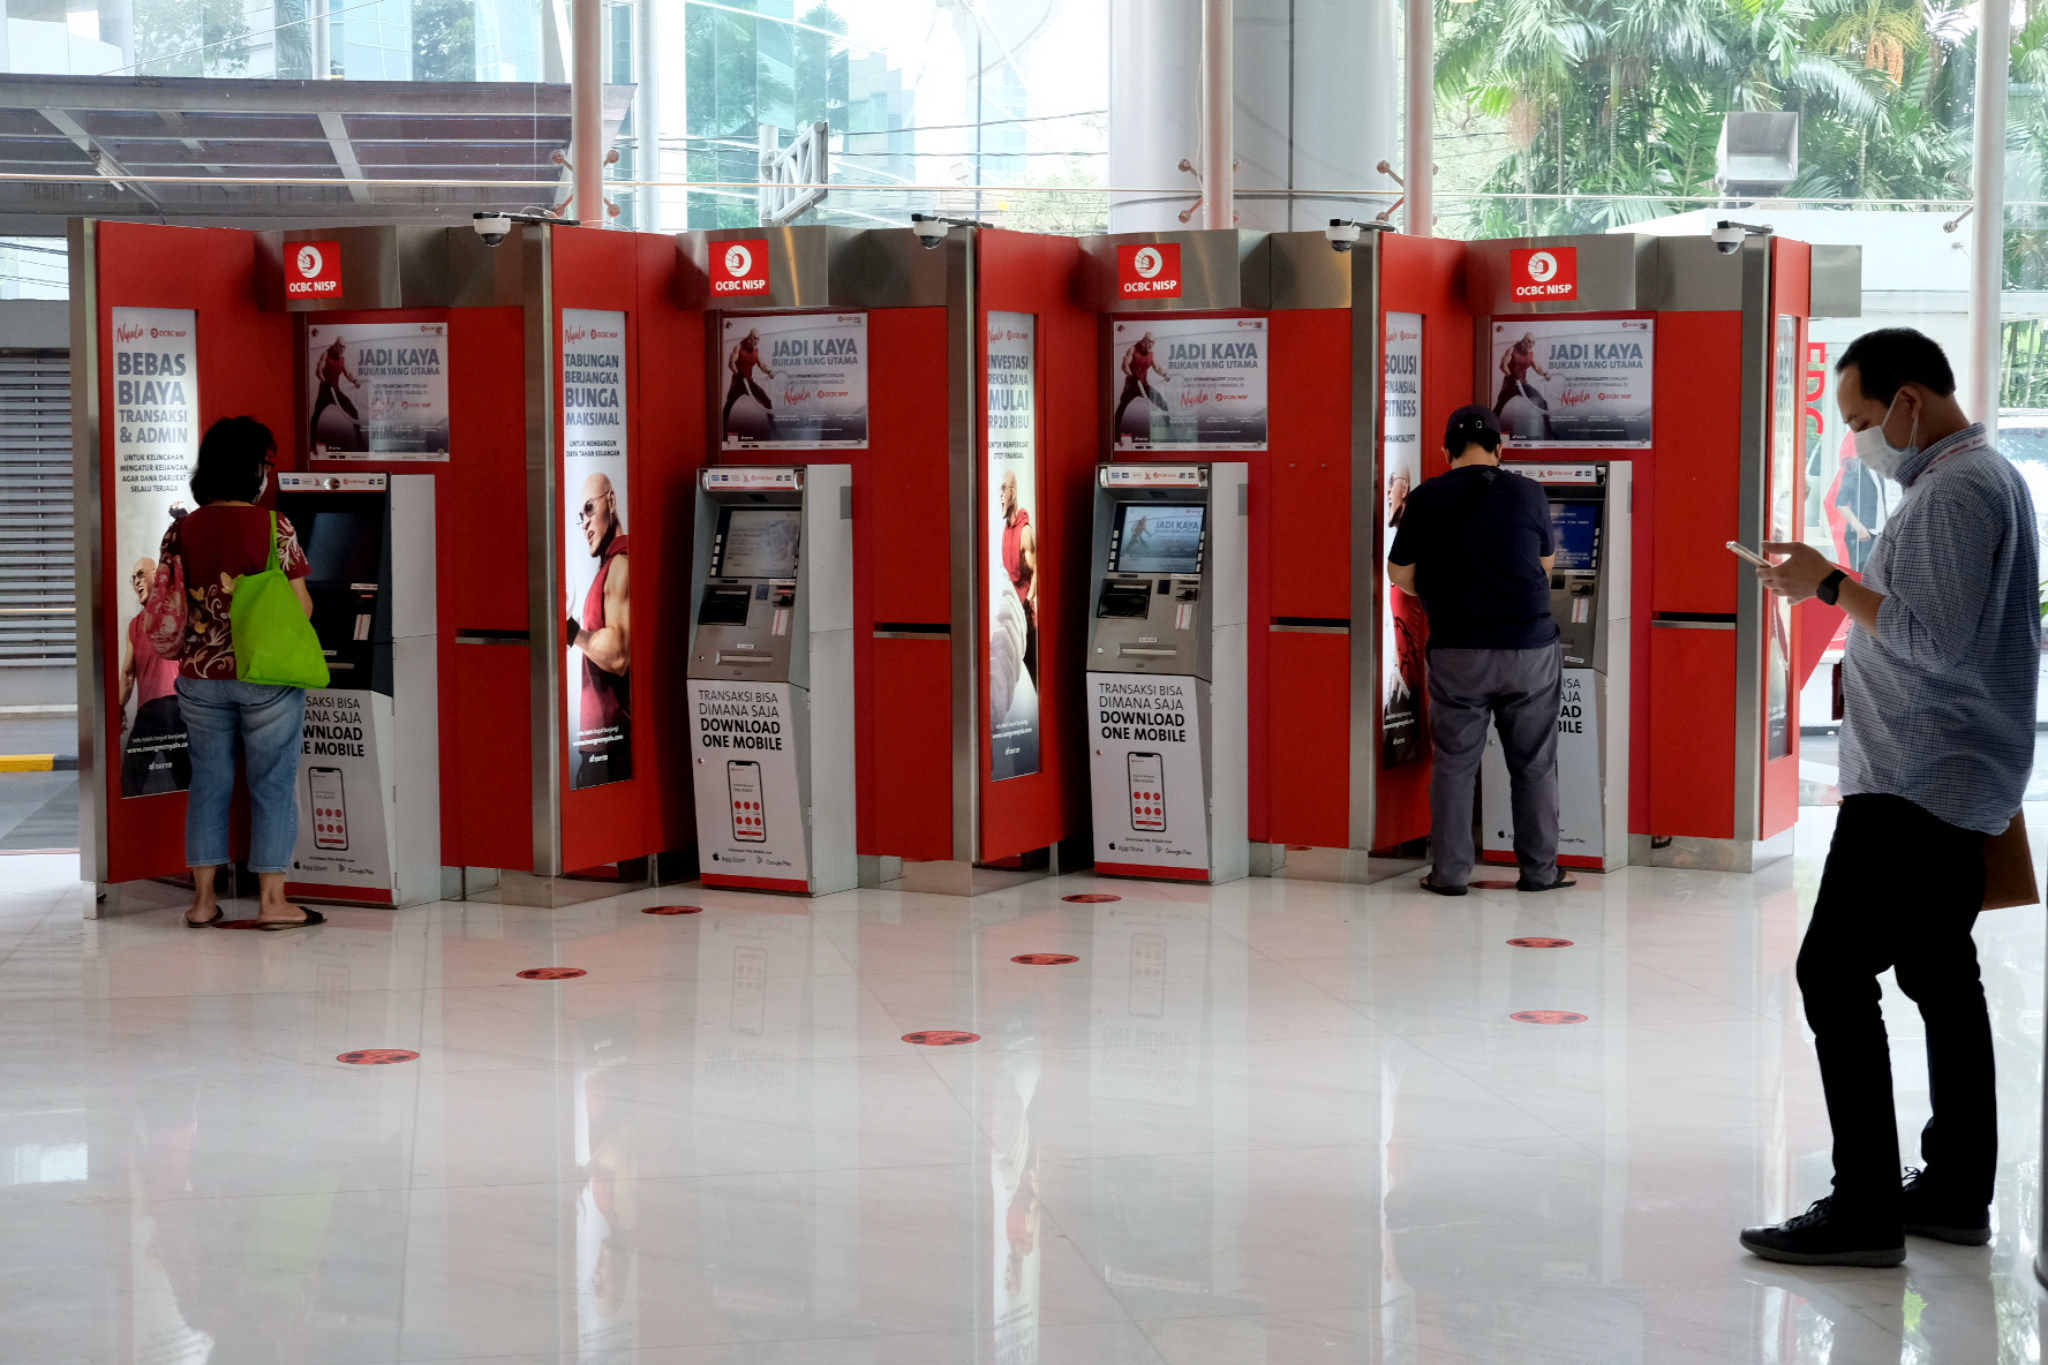 Nasabah melakukan transaksi melalui mesin anjungan tunai mandiri (ATM) di kantor cabang Bank OCBC NISP Jakarta, Senin, 2 Agustus 2021. Foto: Ismail Pohan/TrenAsia